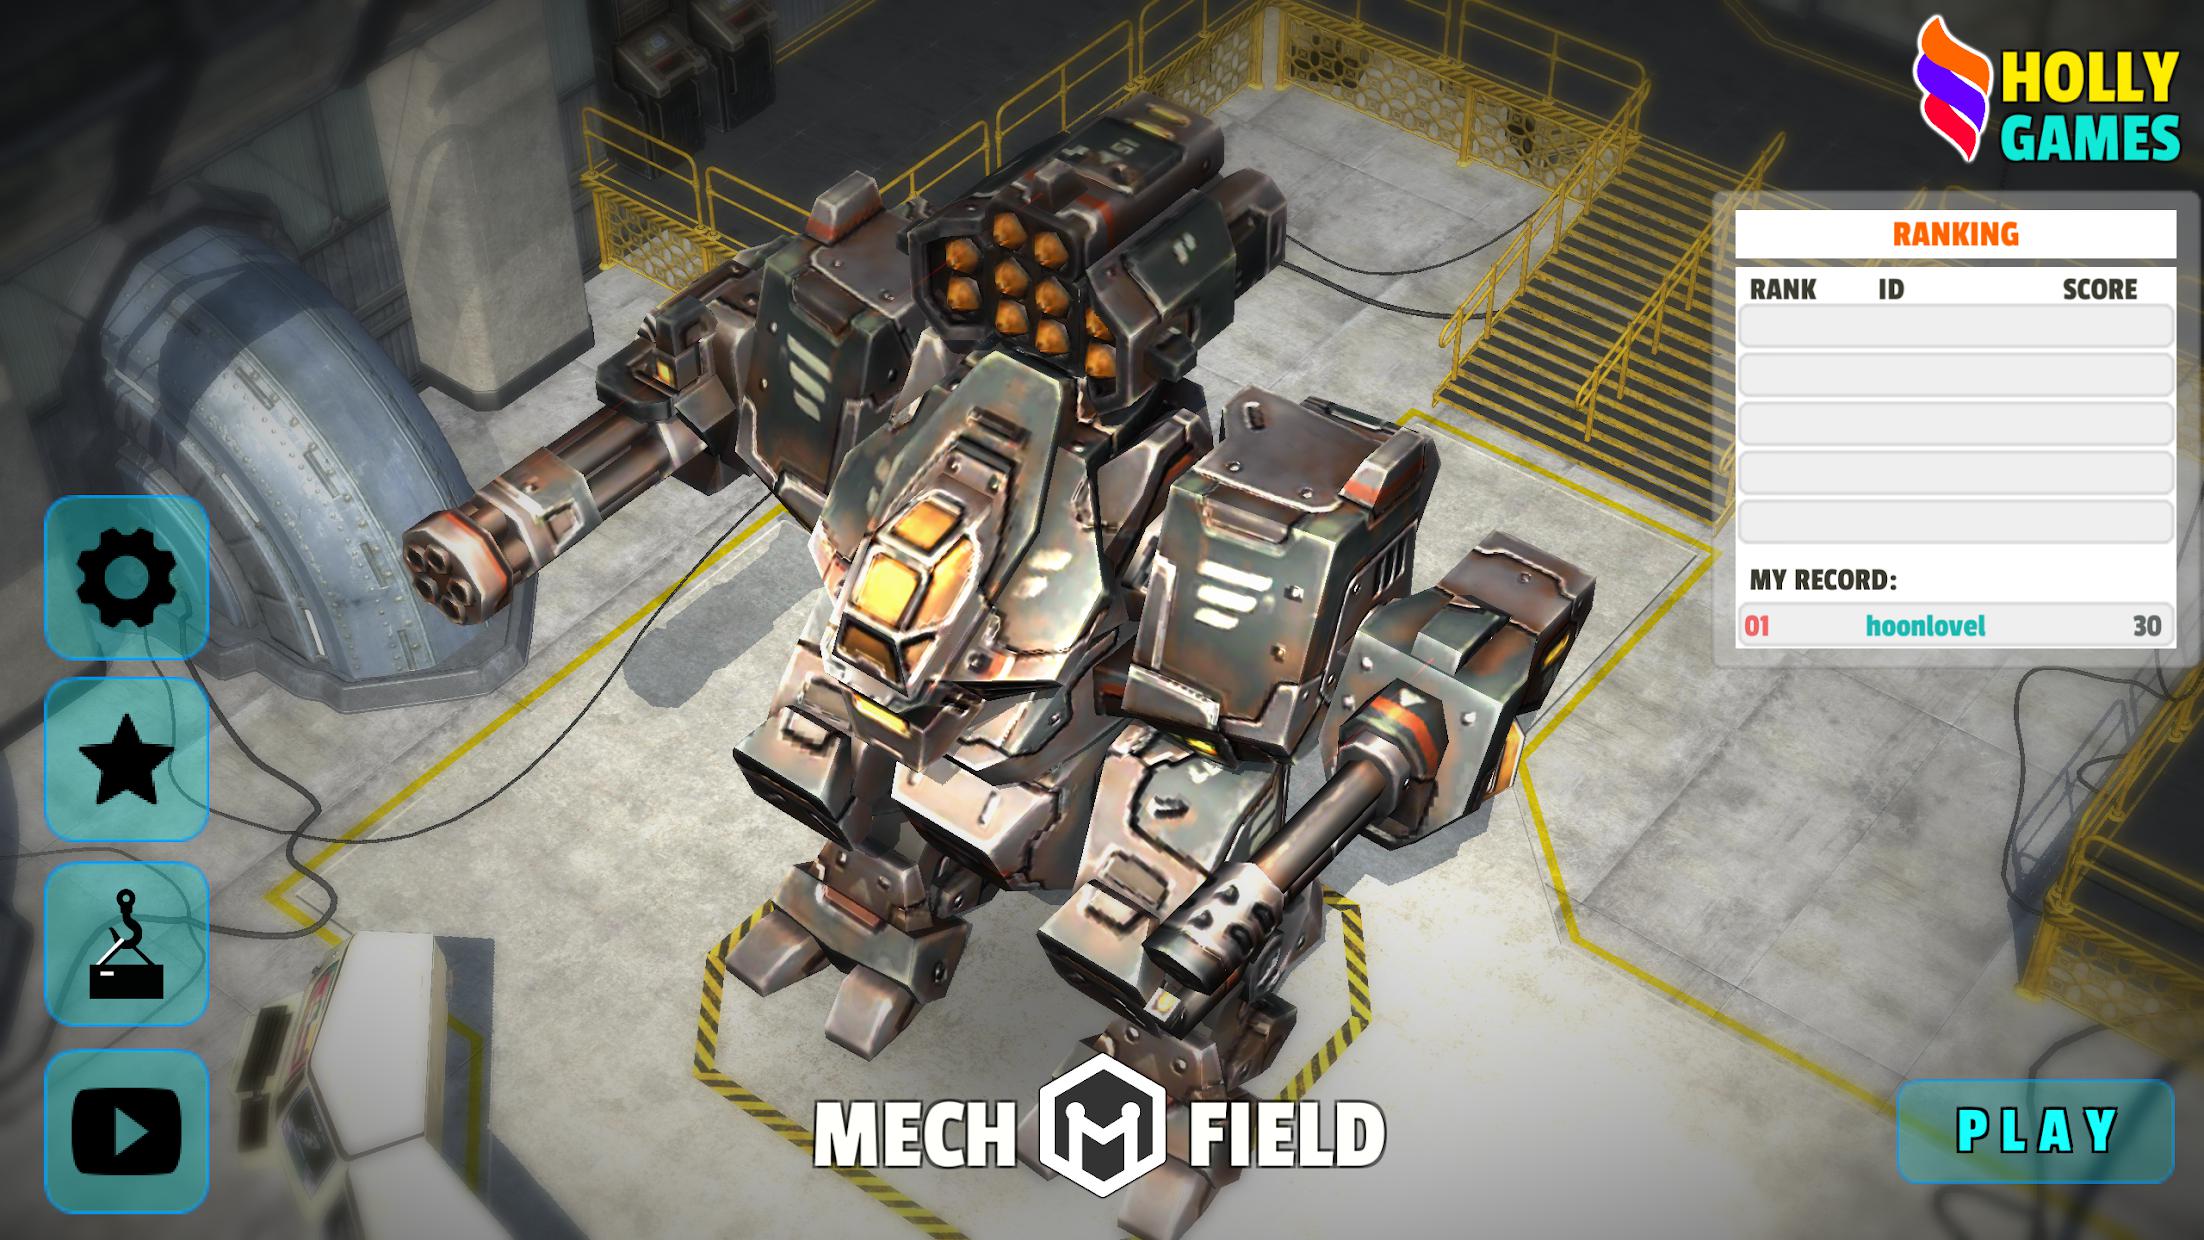 Mech Field(메크 필드:Robot Wars)